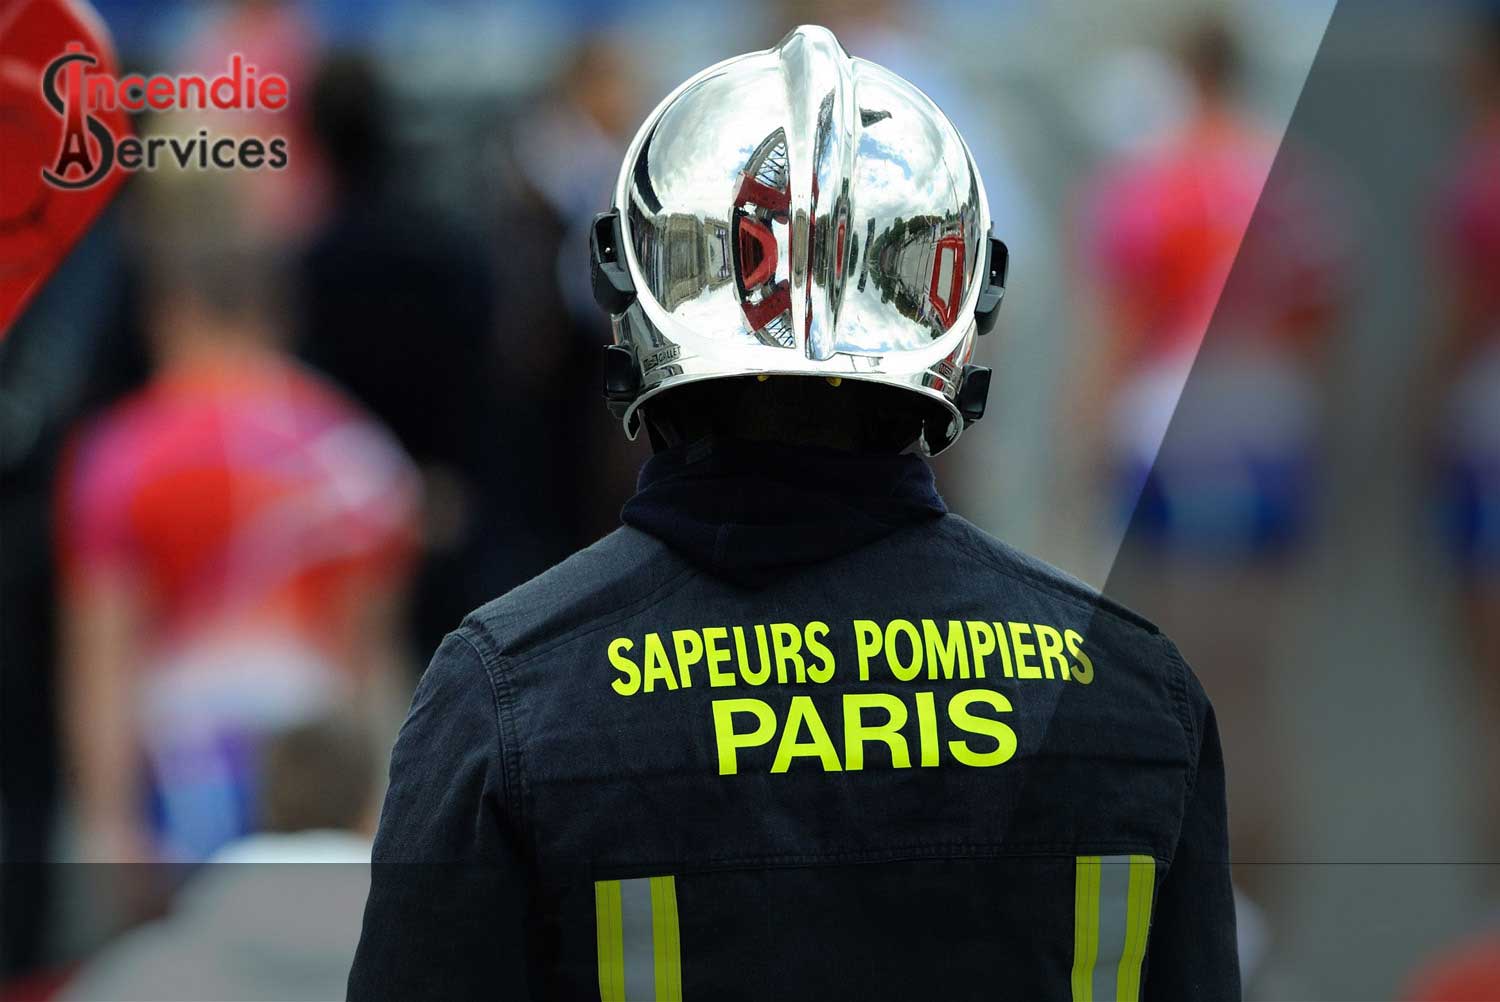 MAINTENANCE EXTINCTEUR PARIS 16 - Entreprise Certifiée | Incendie Services à Paris 75016